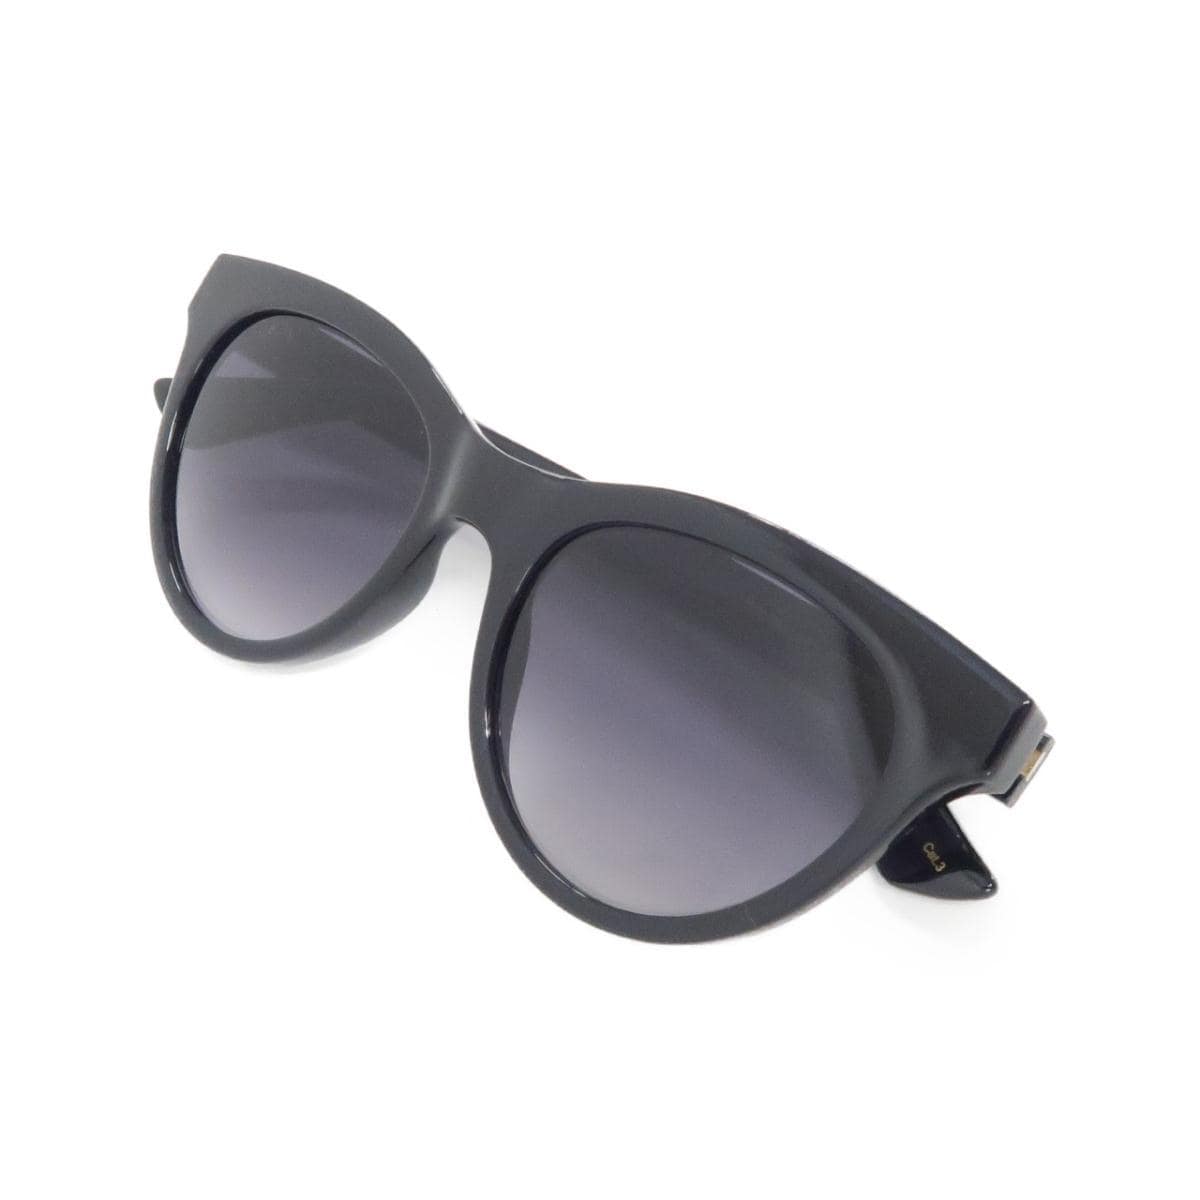 [BRAND NEW] Gucci sunglasses 0763S